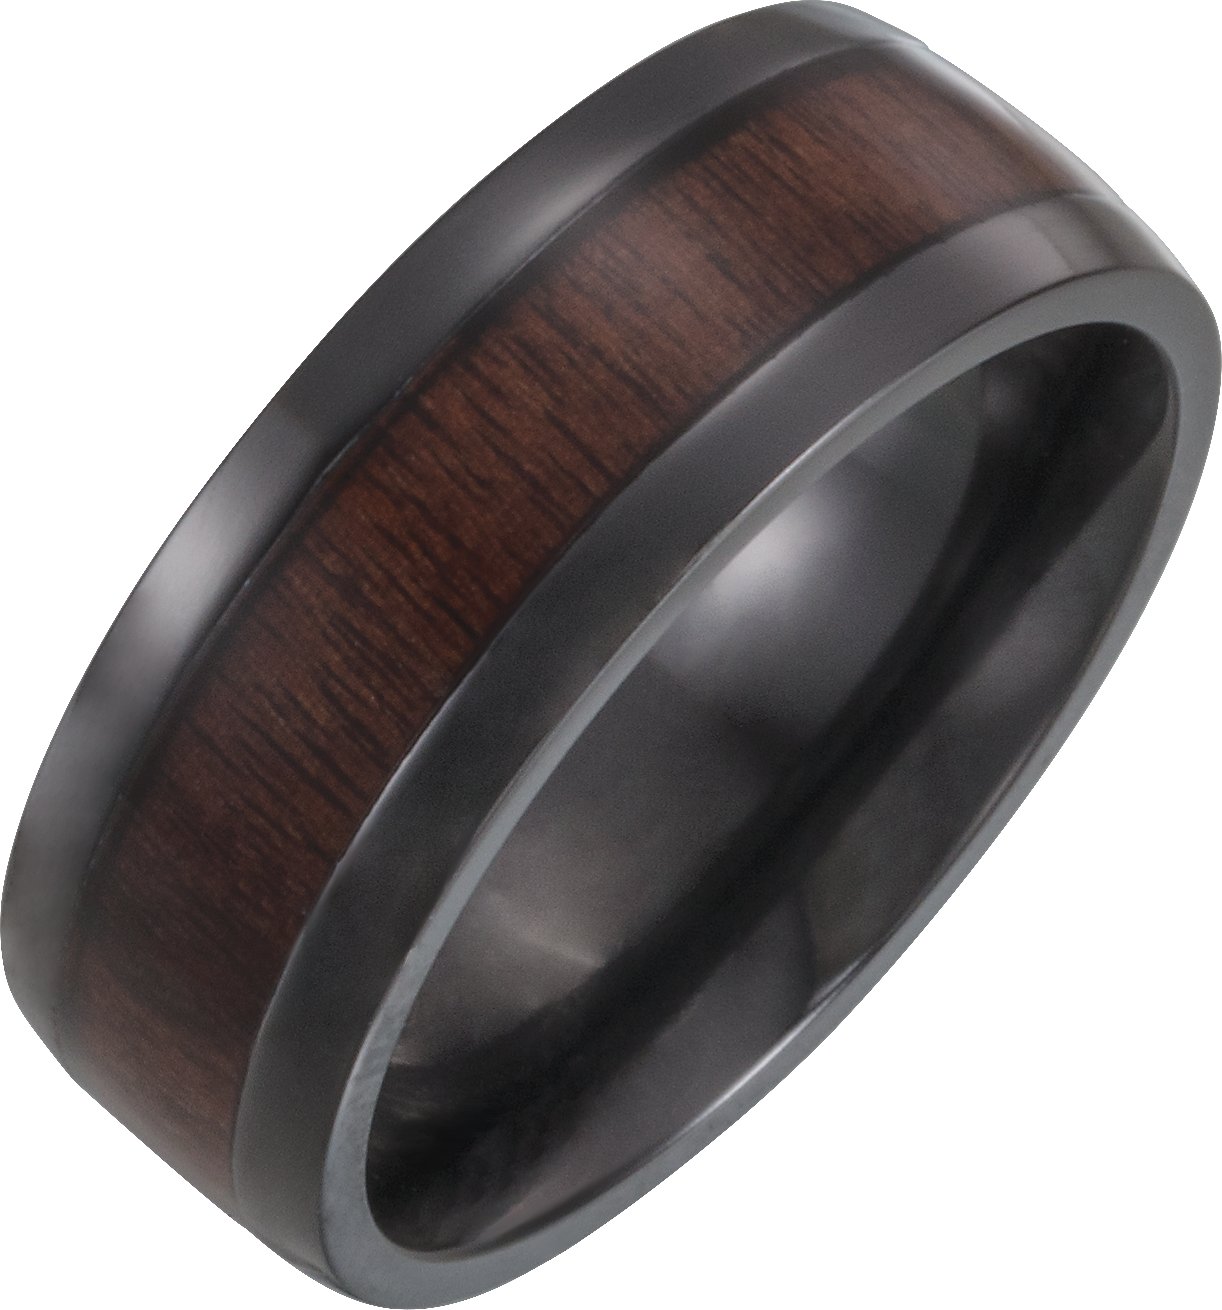 Black Titanium 8 mm Beveled-Edge Band with Wood Inlay Size 12